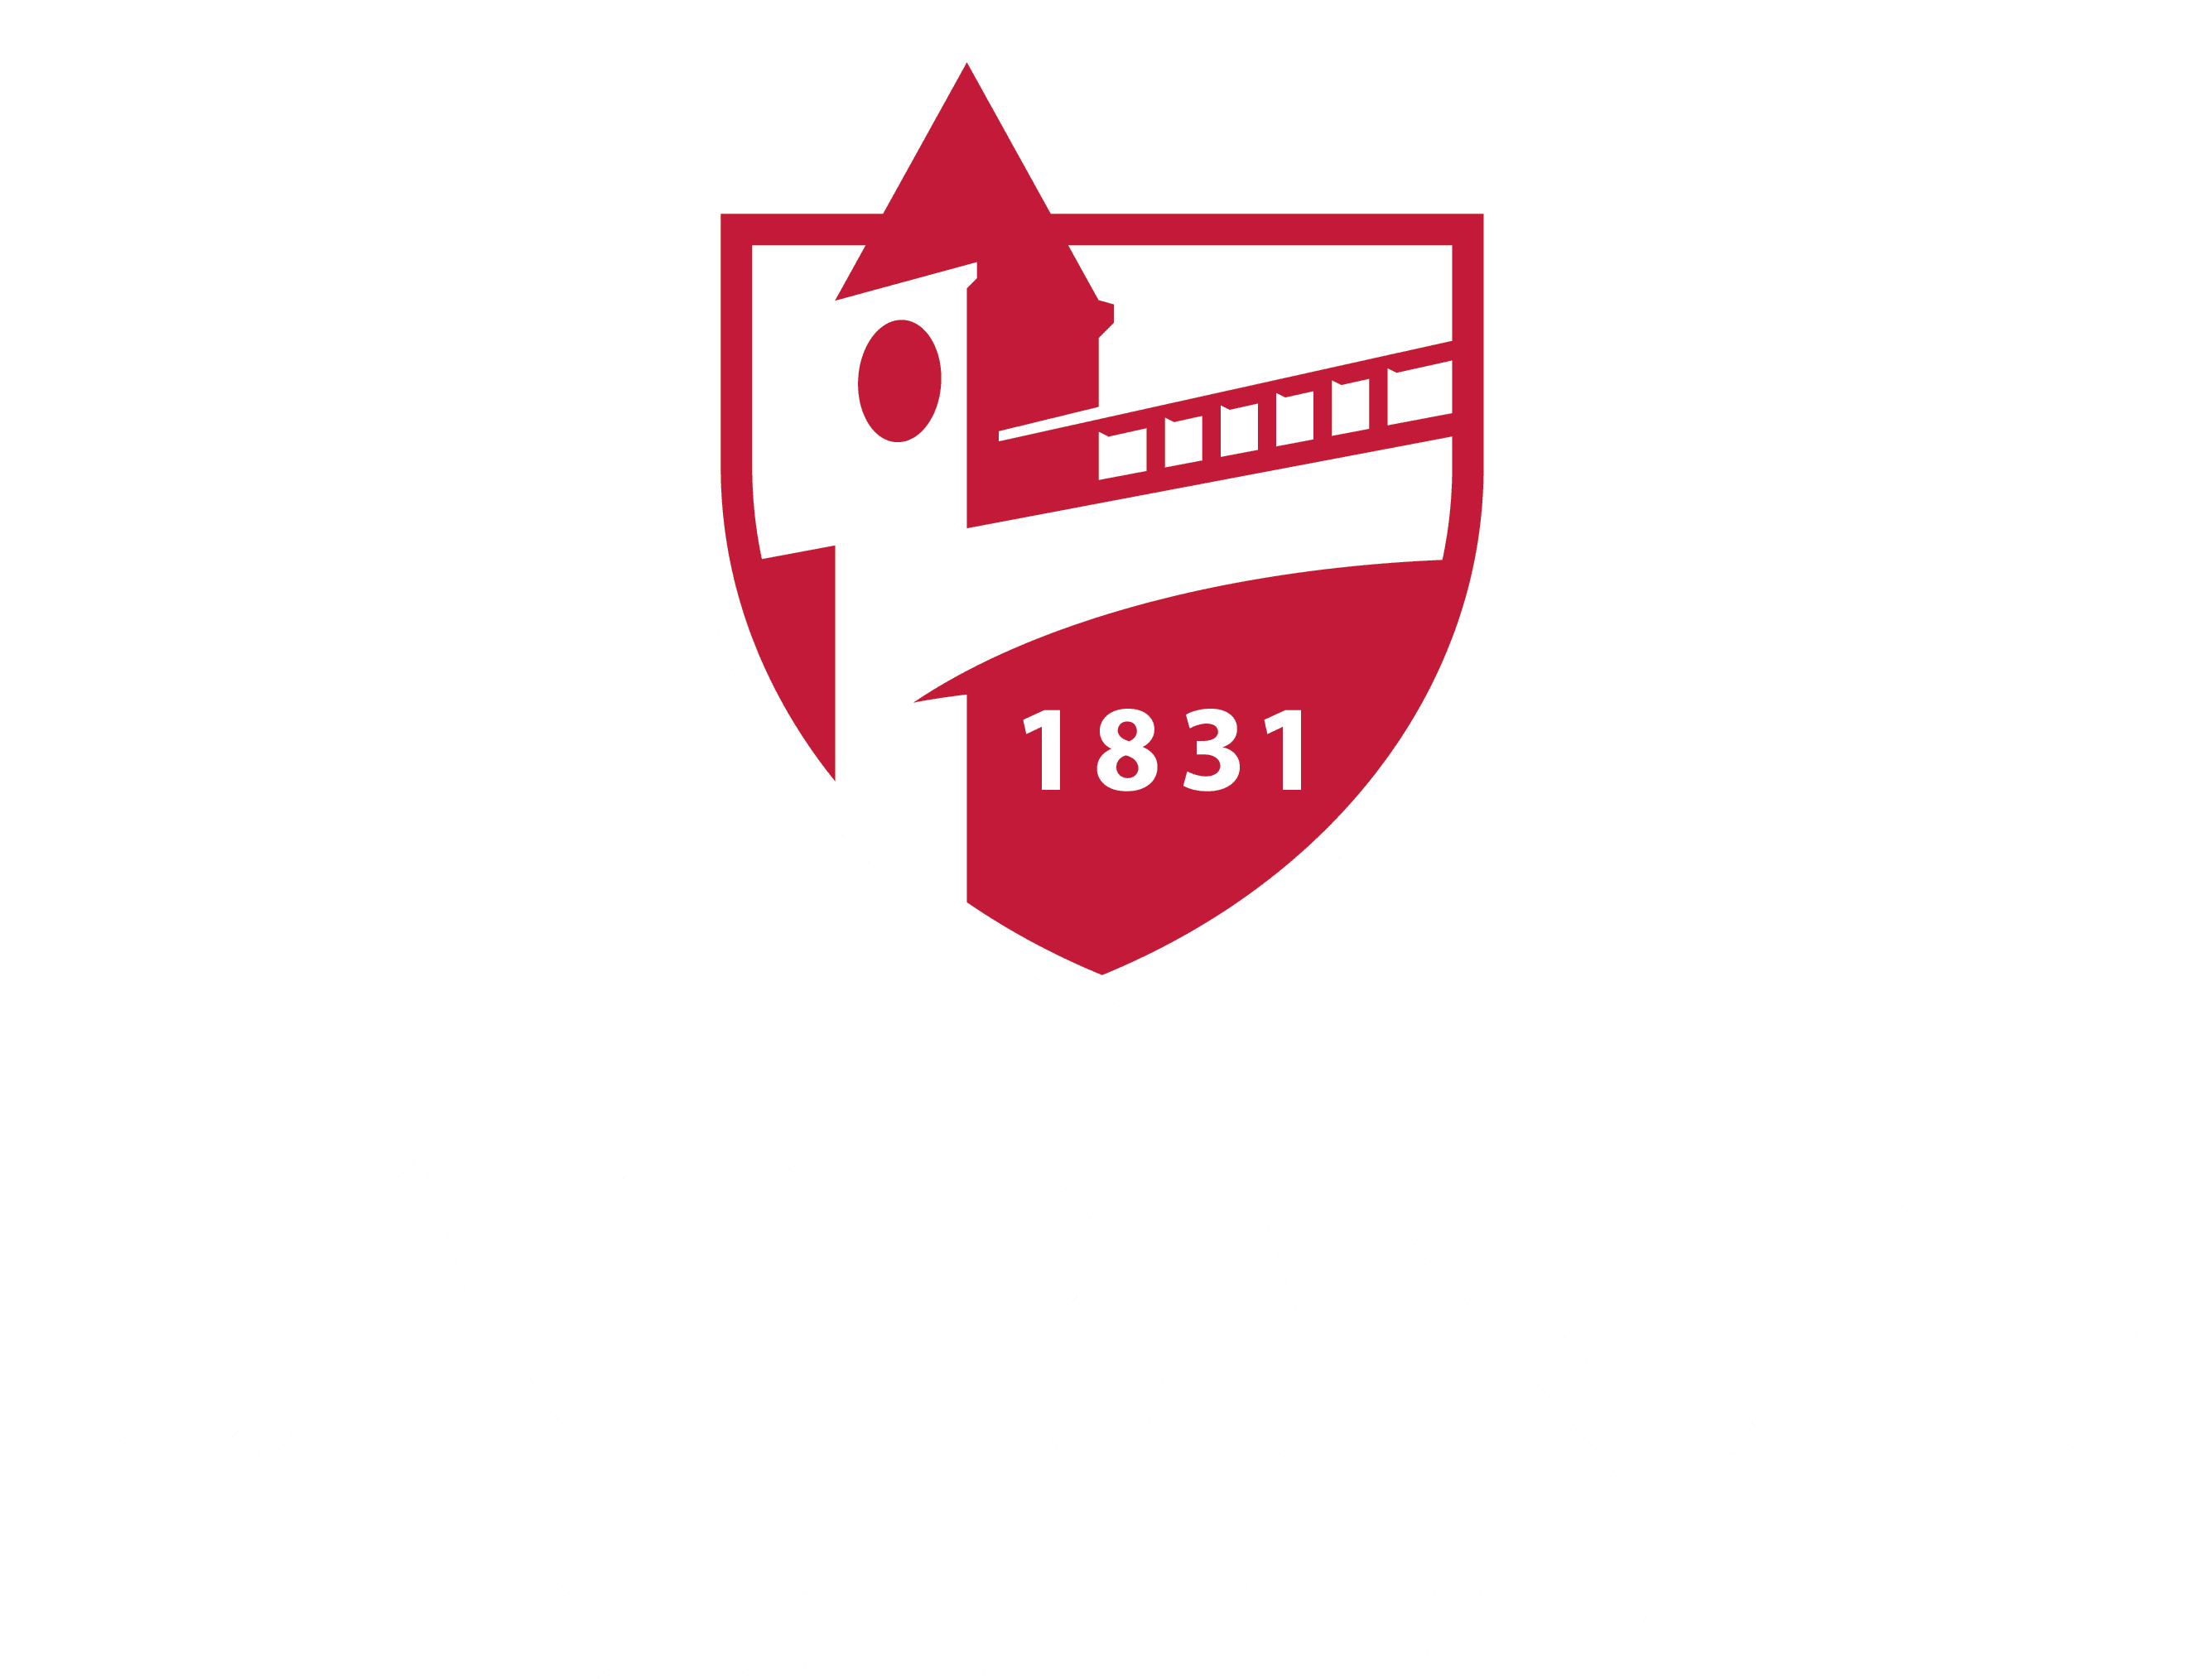 LaGrange College - a four year, private college in Georgia